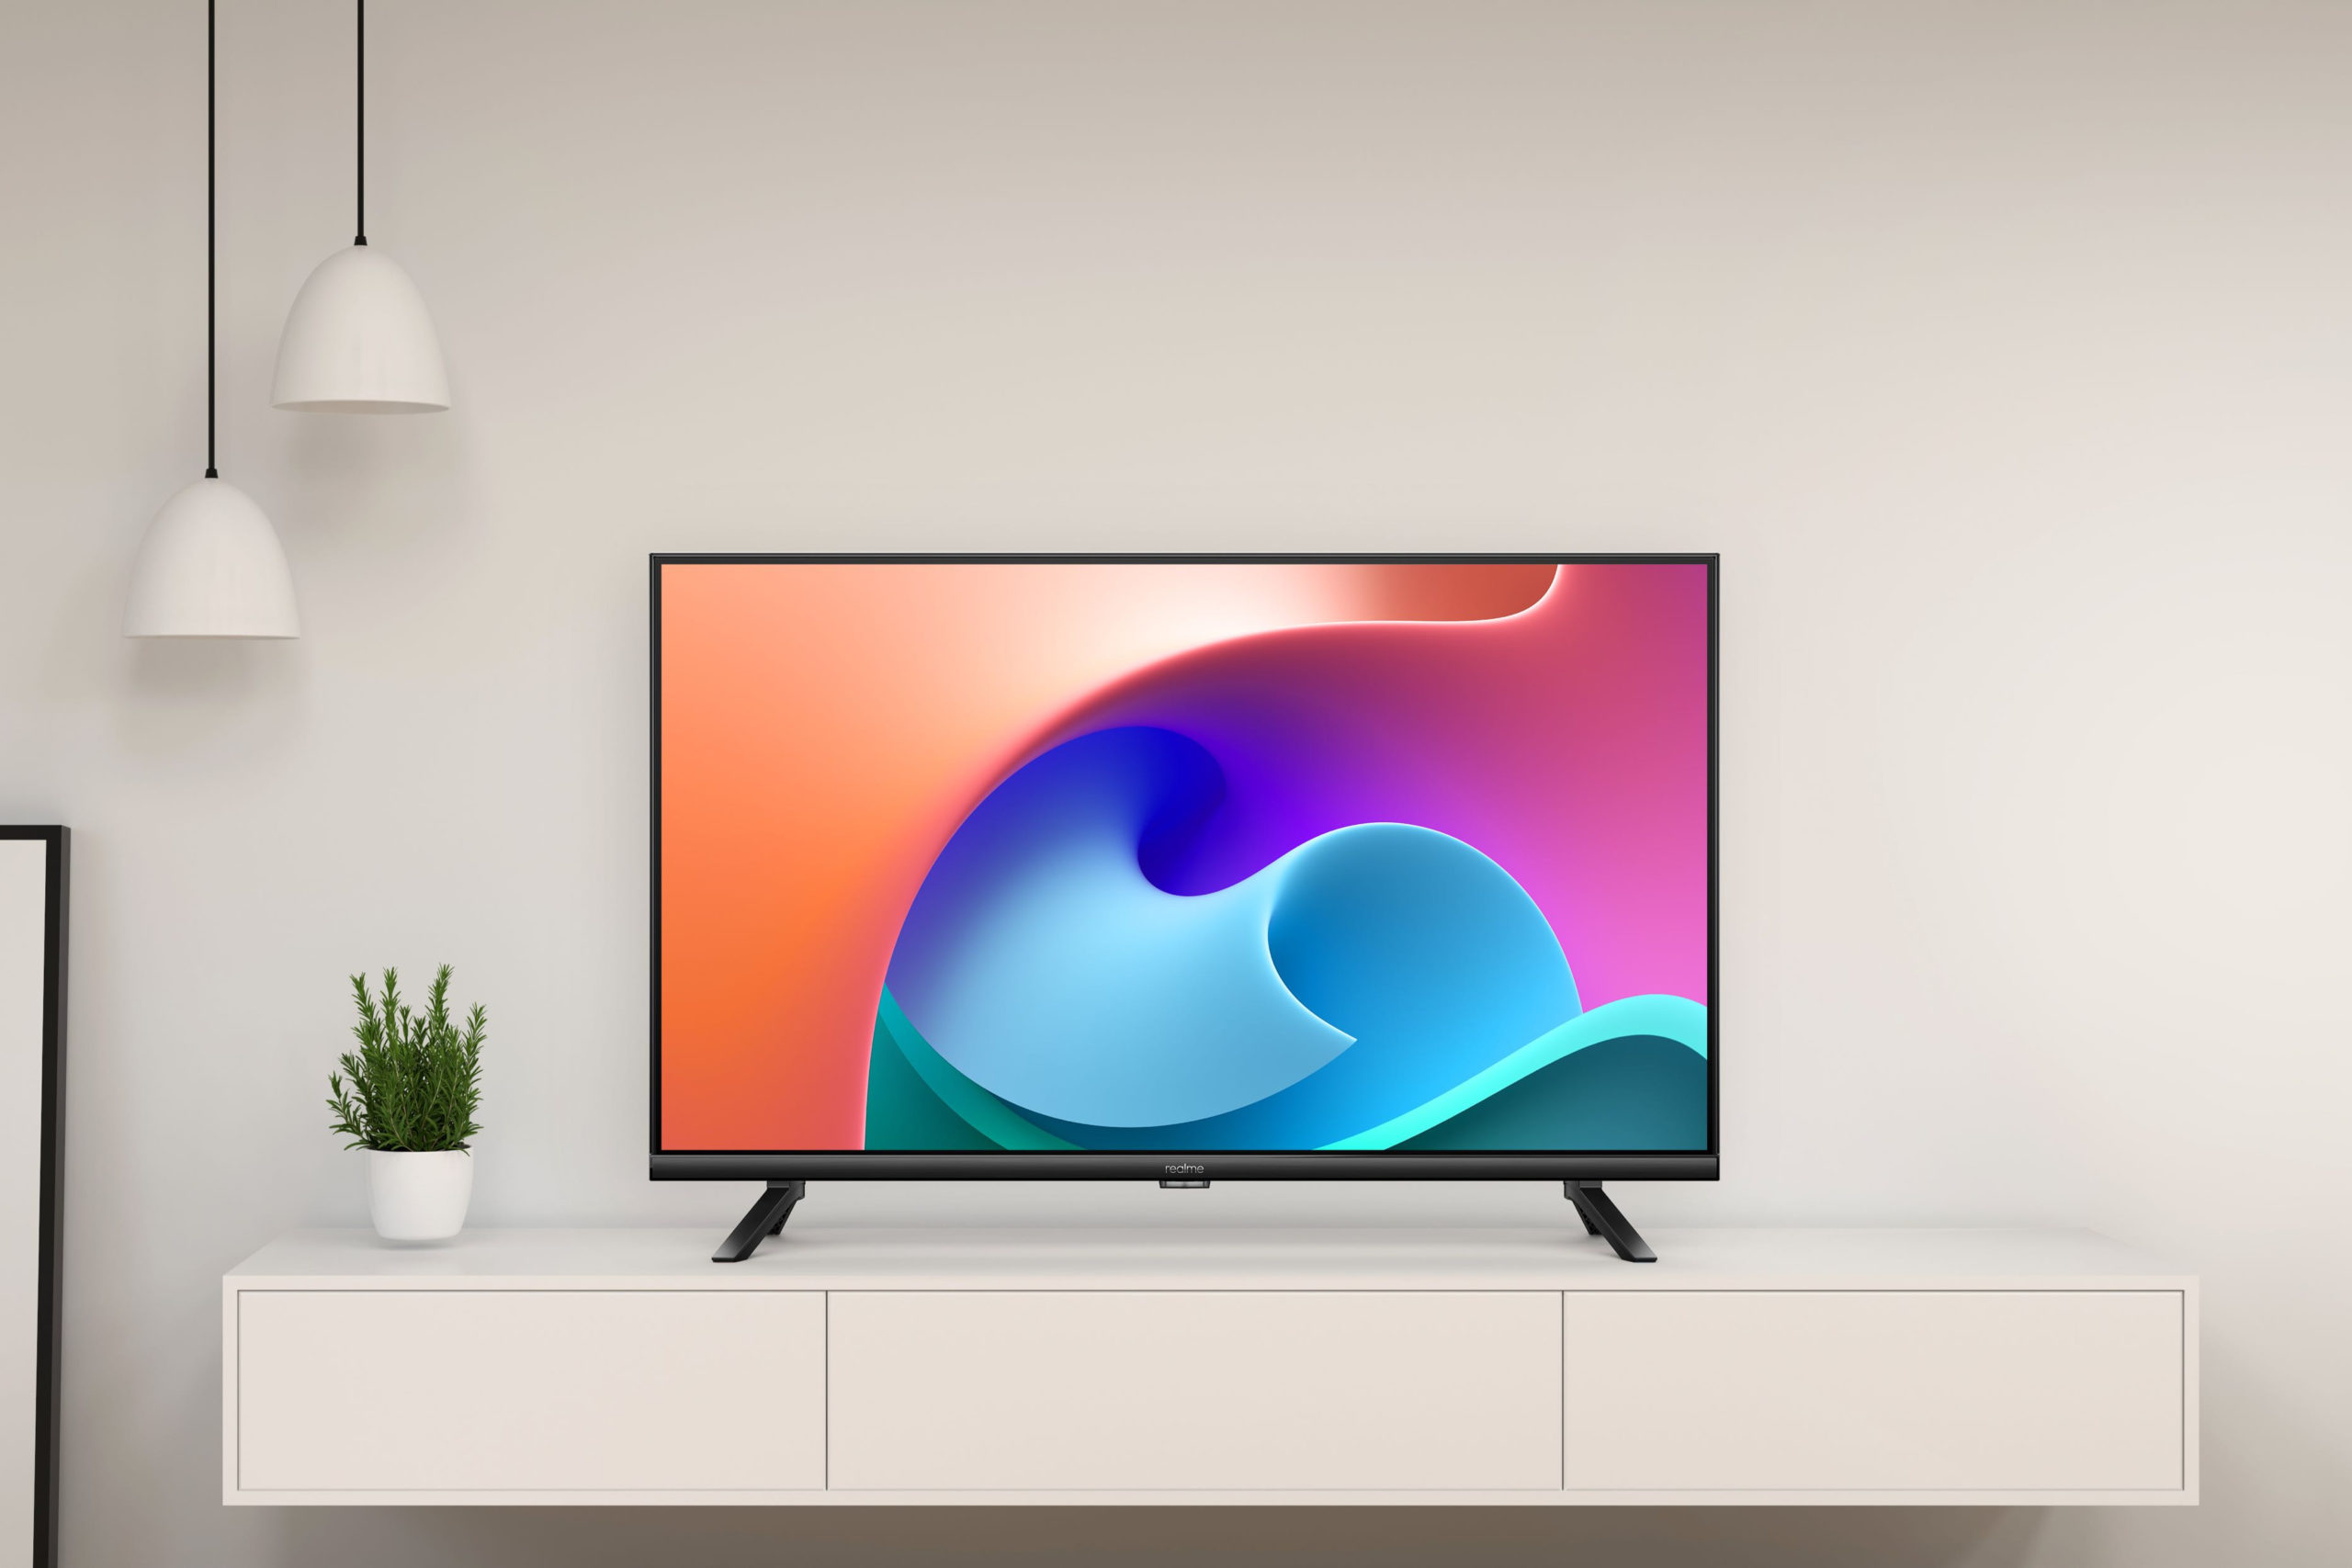 Realme Smart TV 32-inch